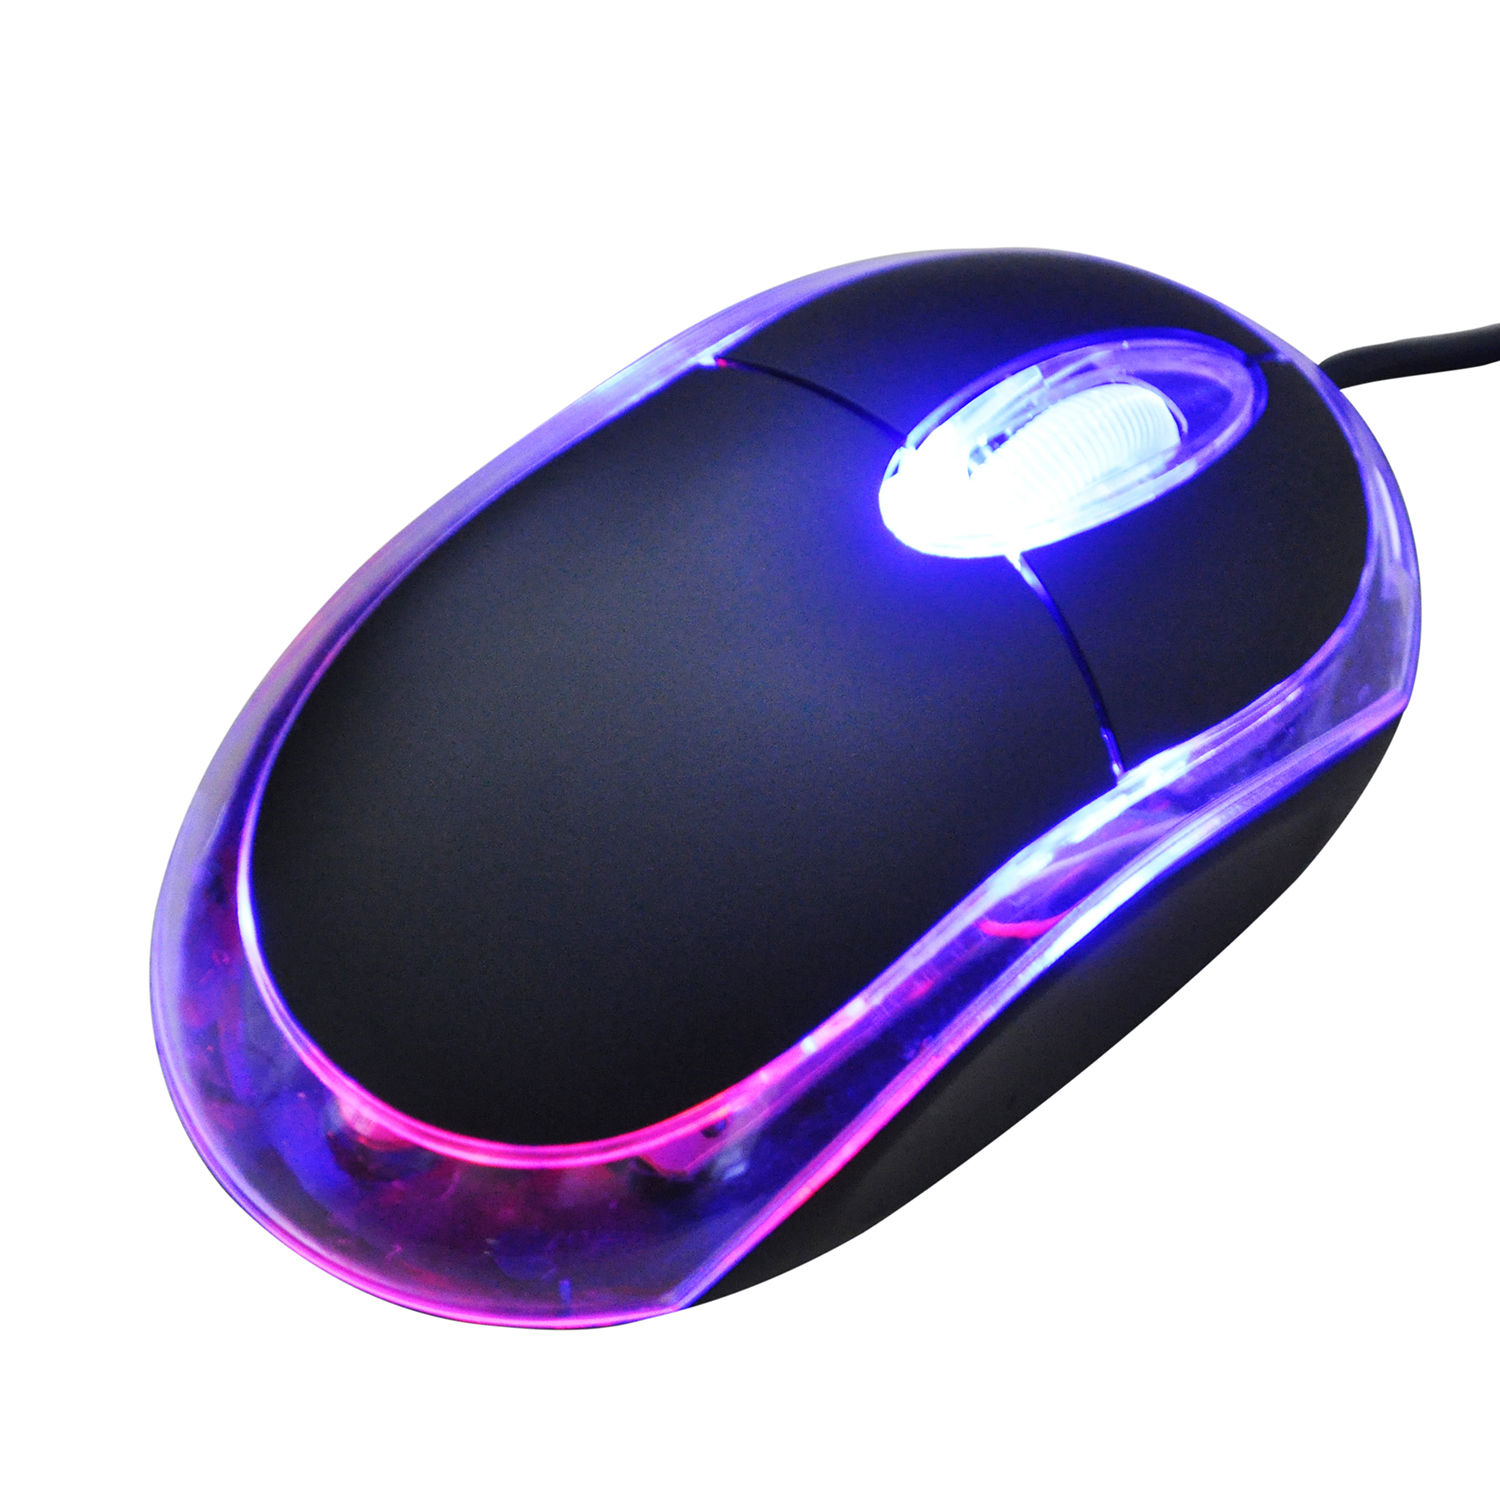 Мышка для компьютера. Мышка PC Mouse. Мышь компьютерная проводная g5 /. USB Optical Mouse. Красивая мышка для ноутбука.